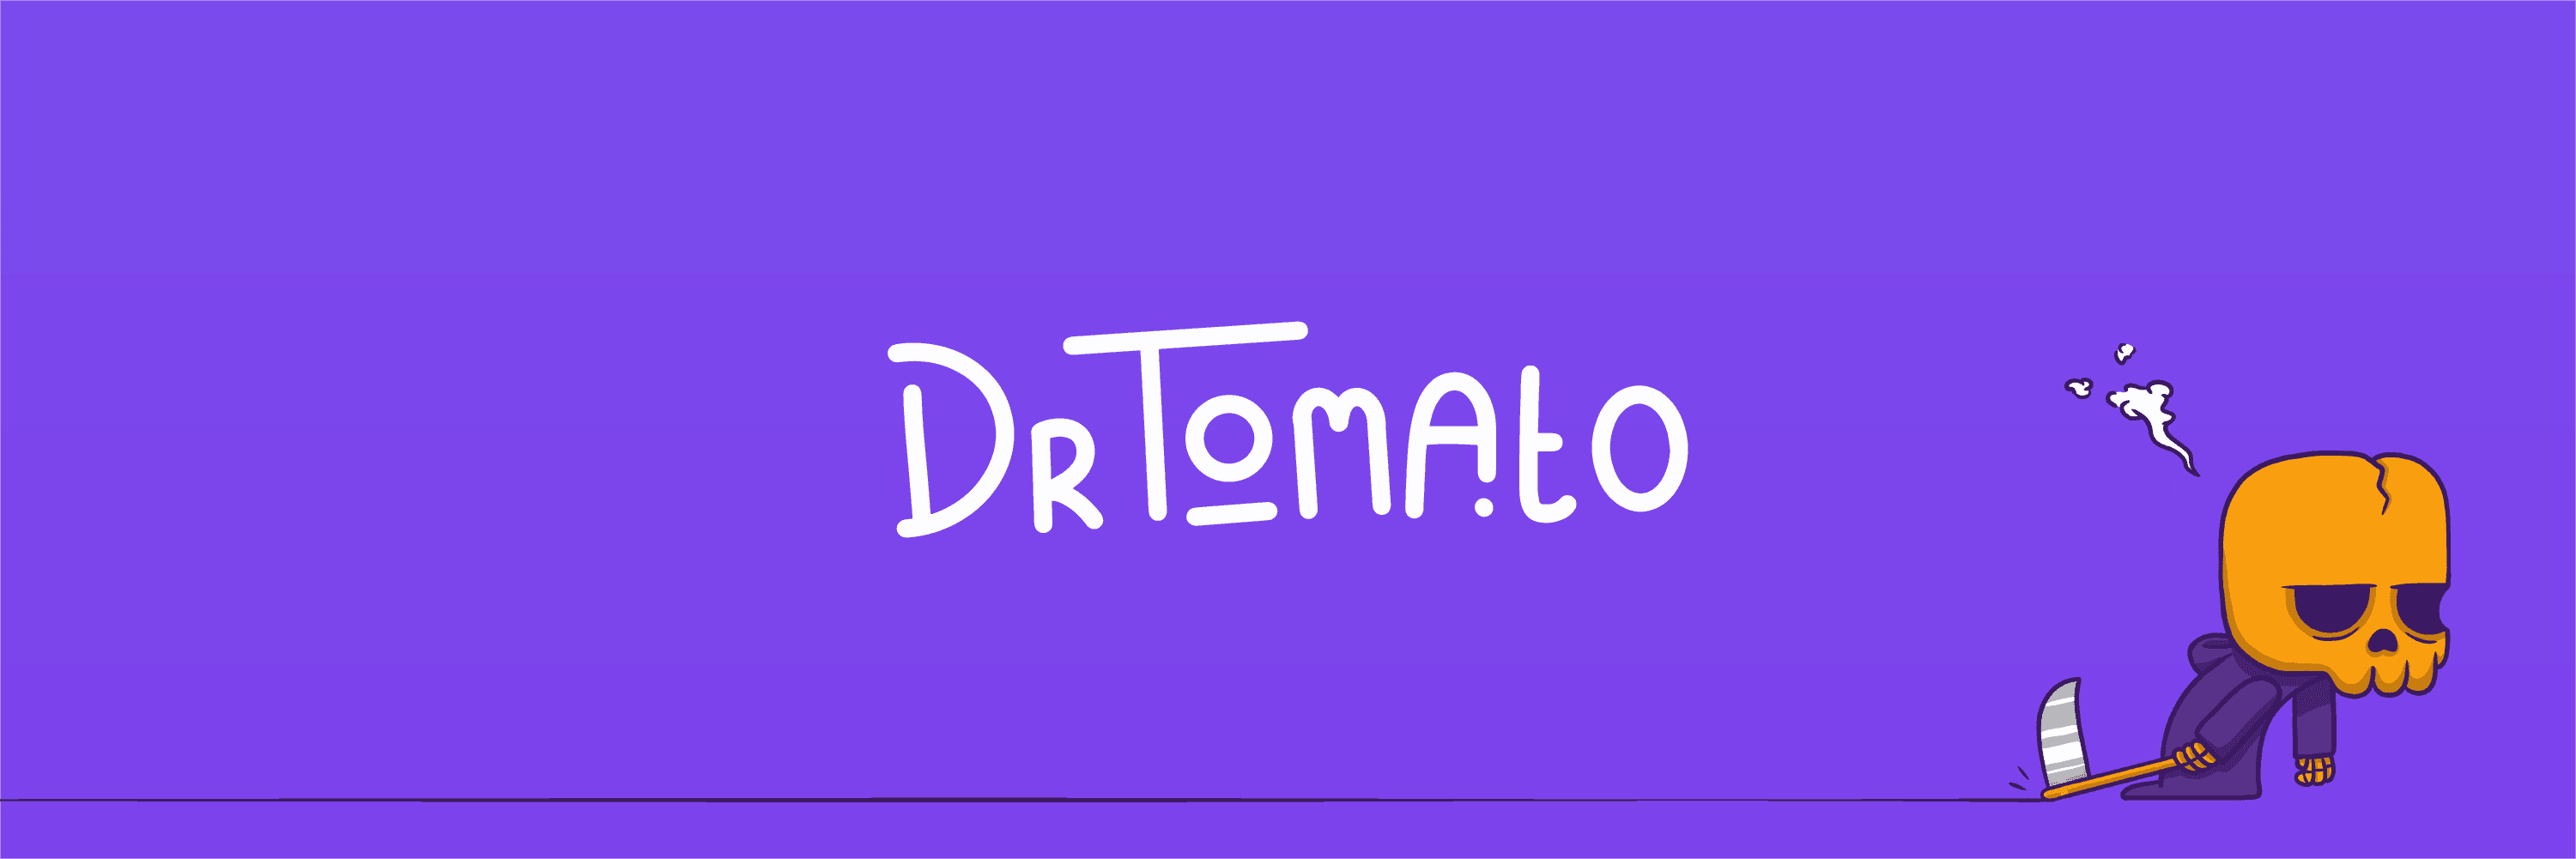 DrTomato_Vault banner